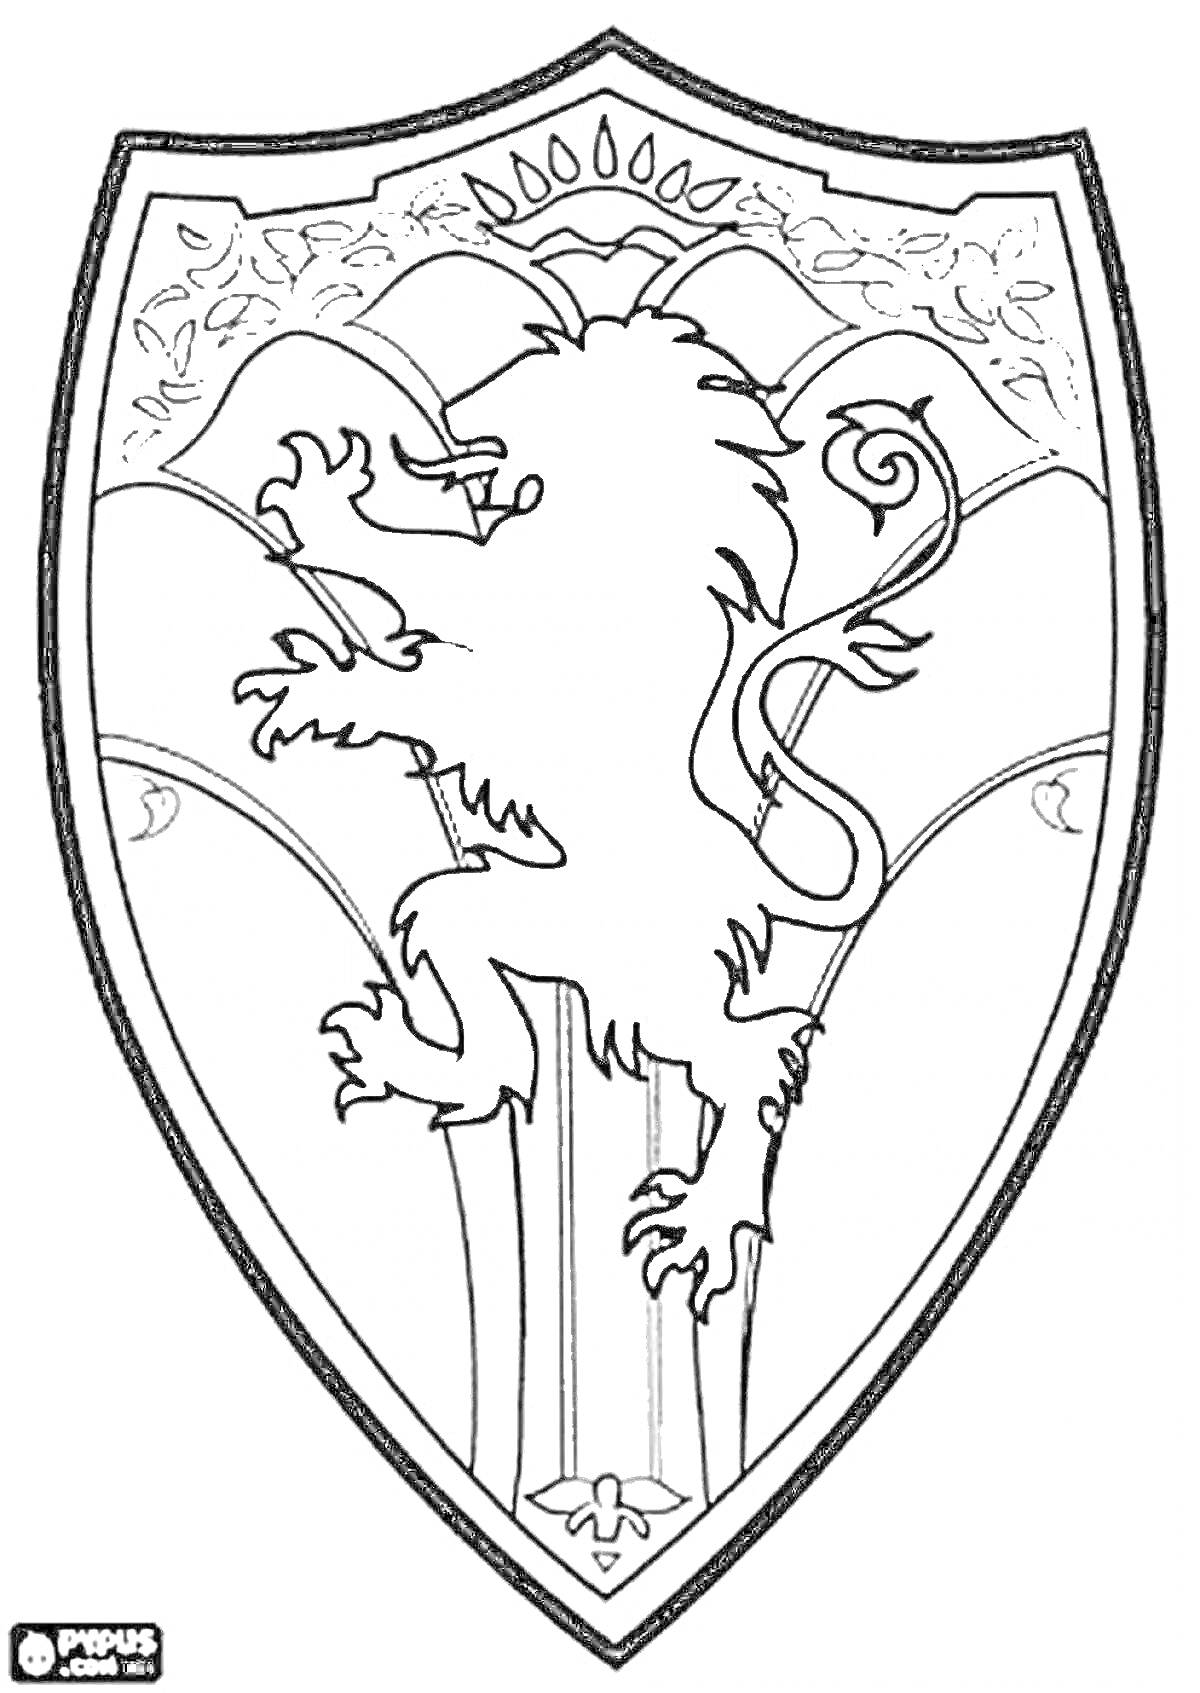 Раскраска Герб с львом, держащим оружие, на фоне узора и арочного декора